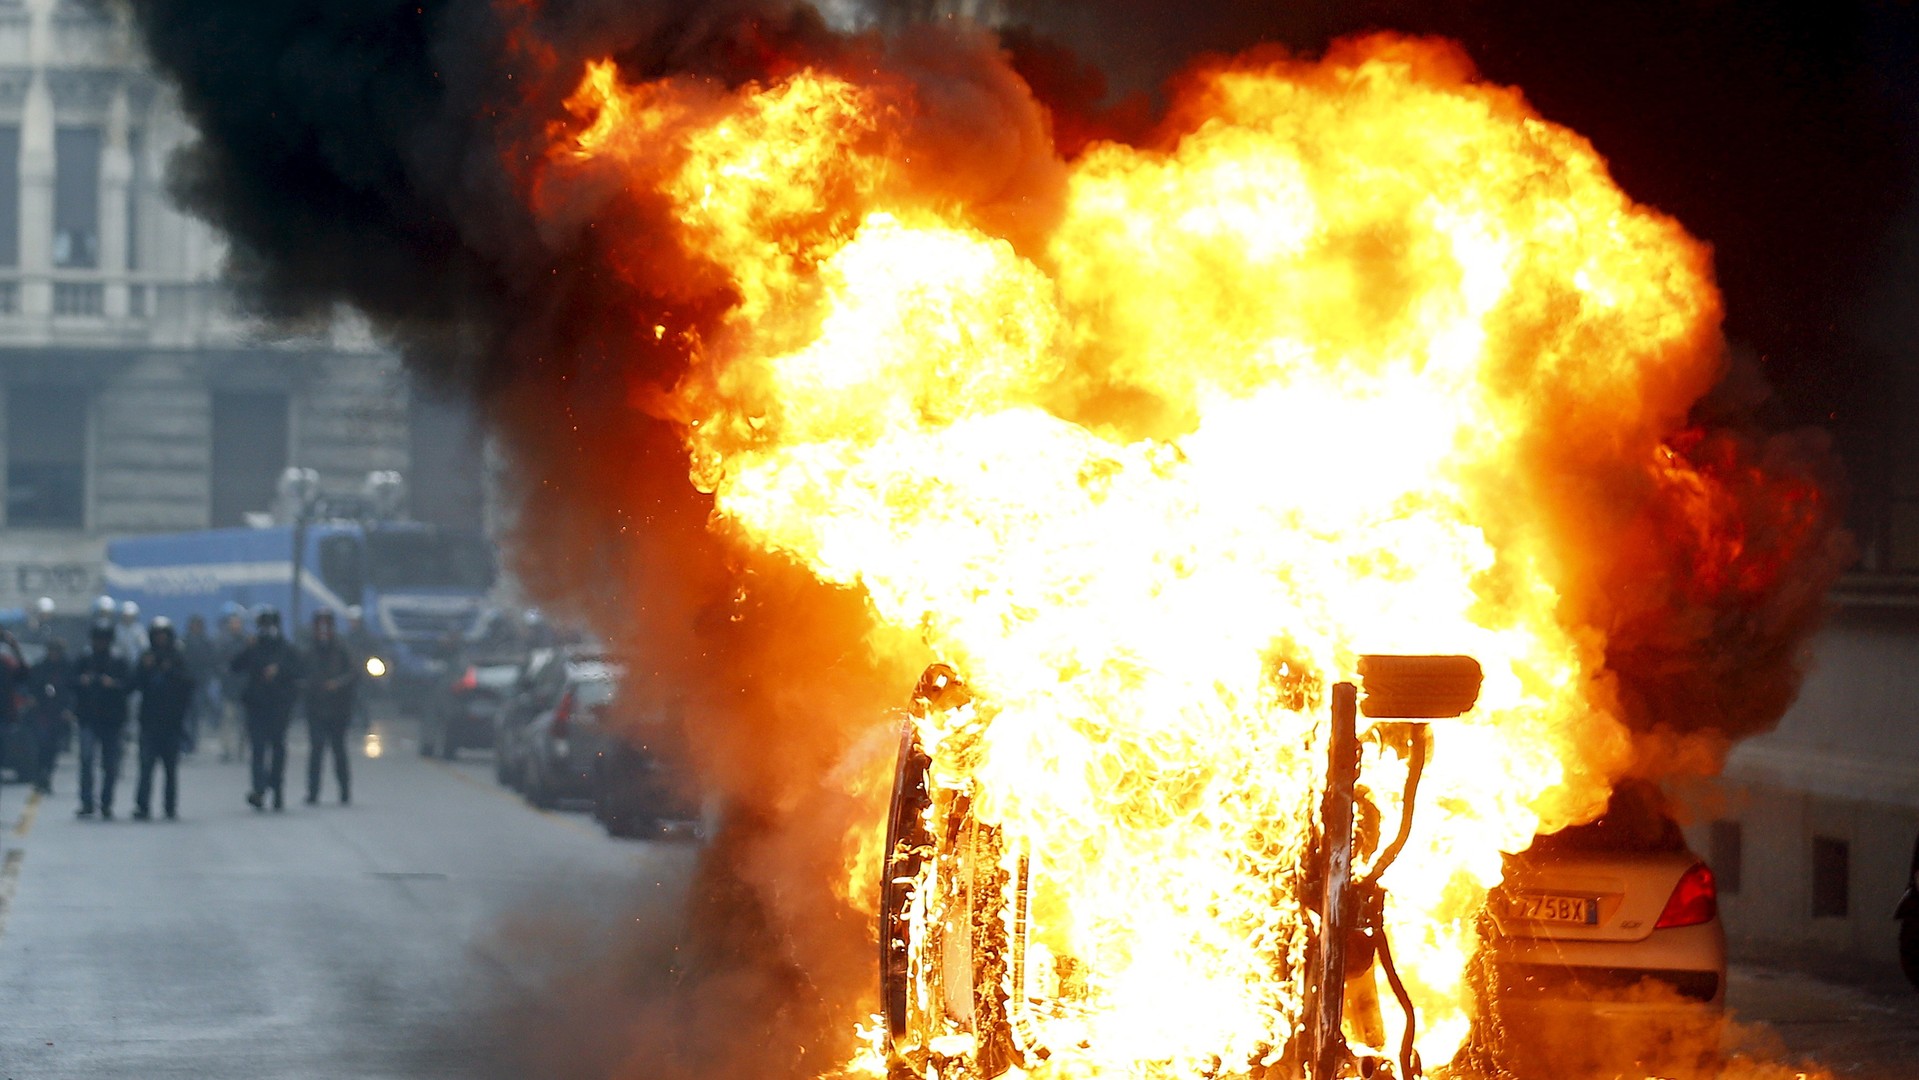  Voitures incendiées par les militants au cours d'une manifestation anti-Expo universelle